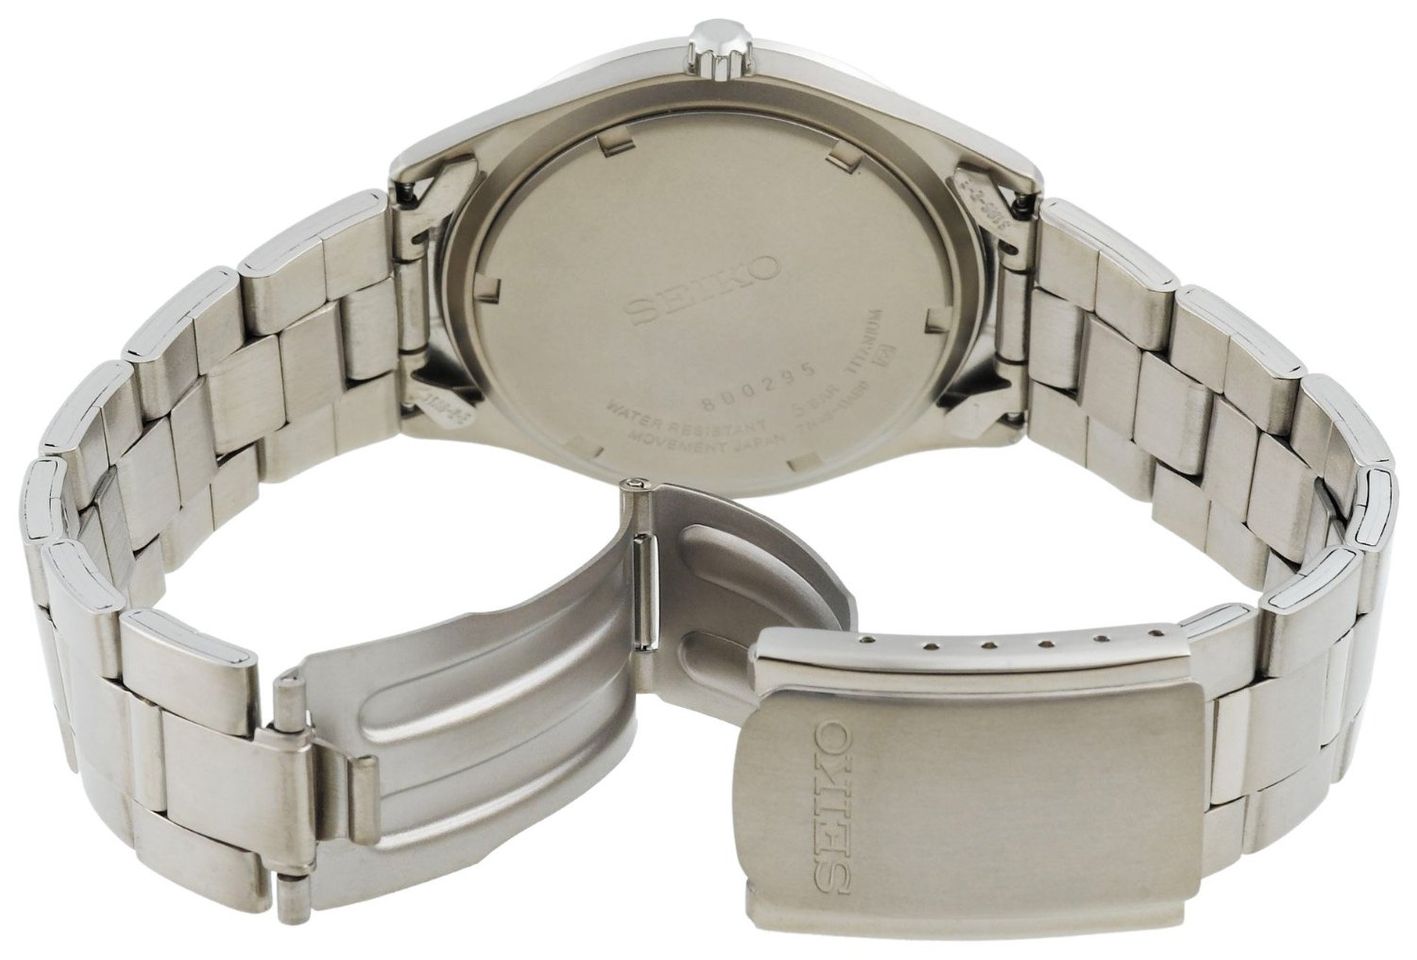 Đồng hồ Seiko cho nam SGG709 chiều rộng dây 20mm, khóa khớp chắc chắn, màu bạc sang trọng